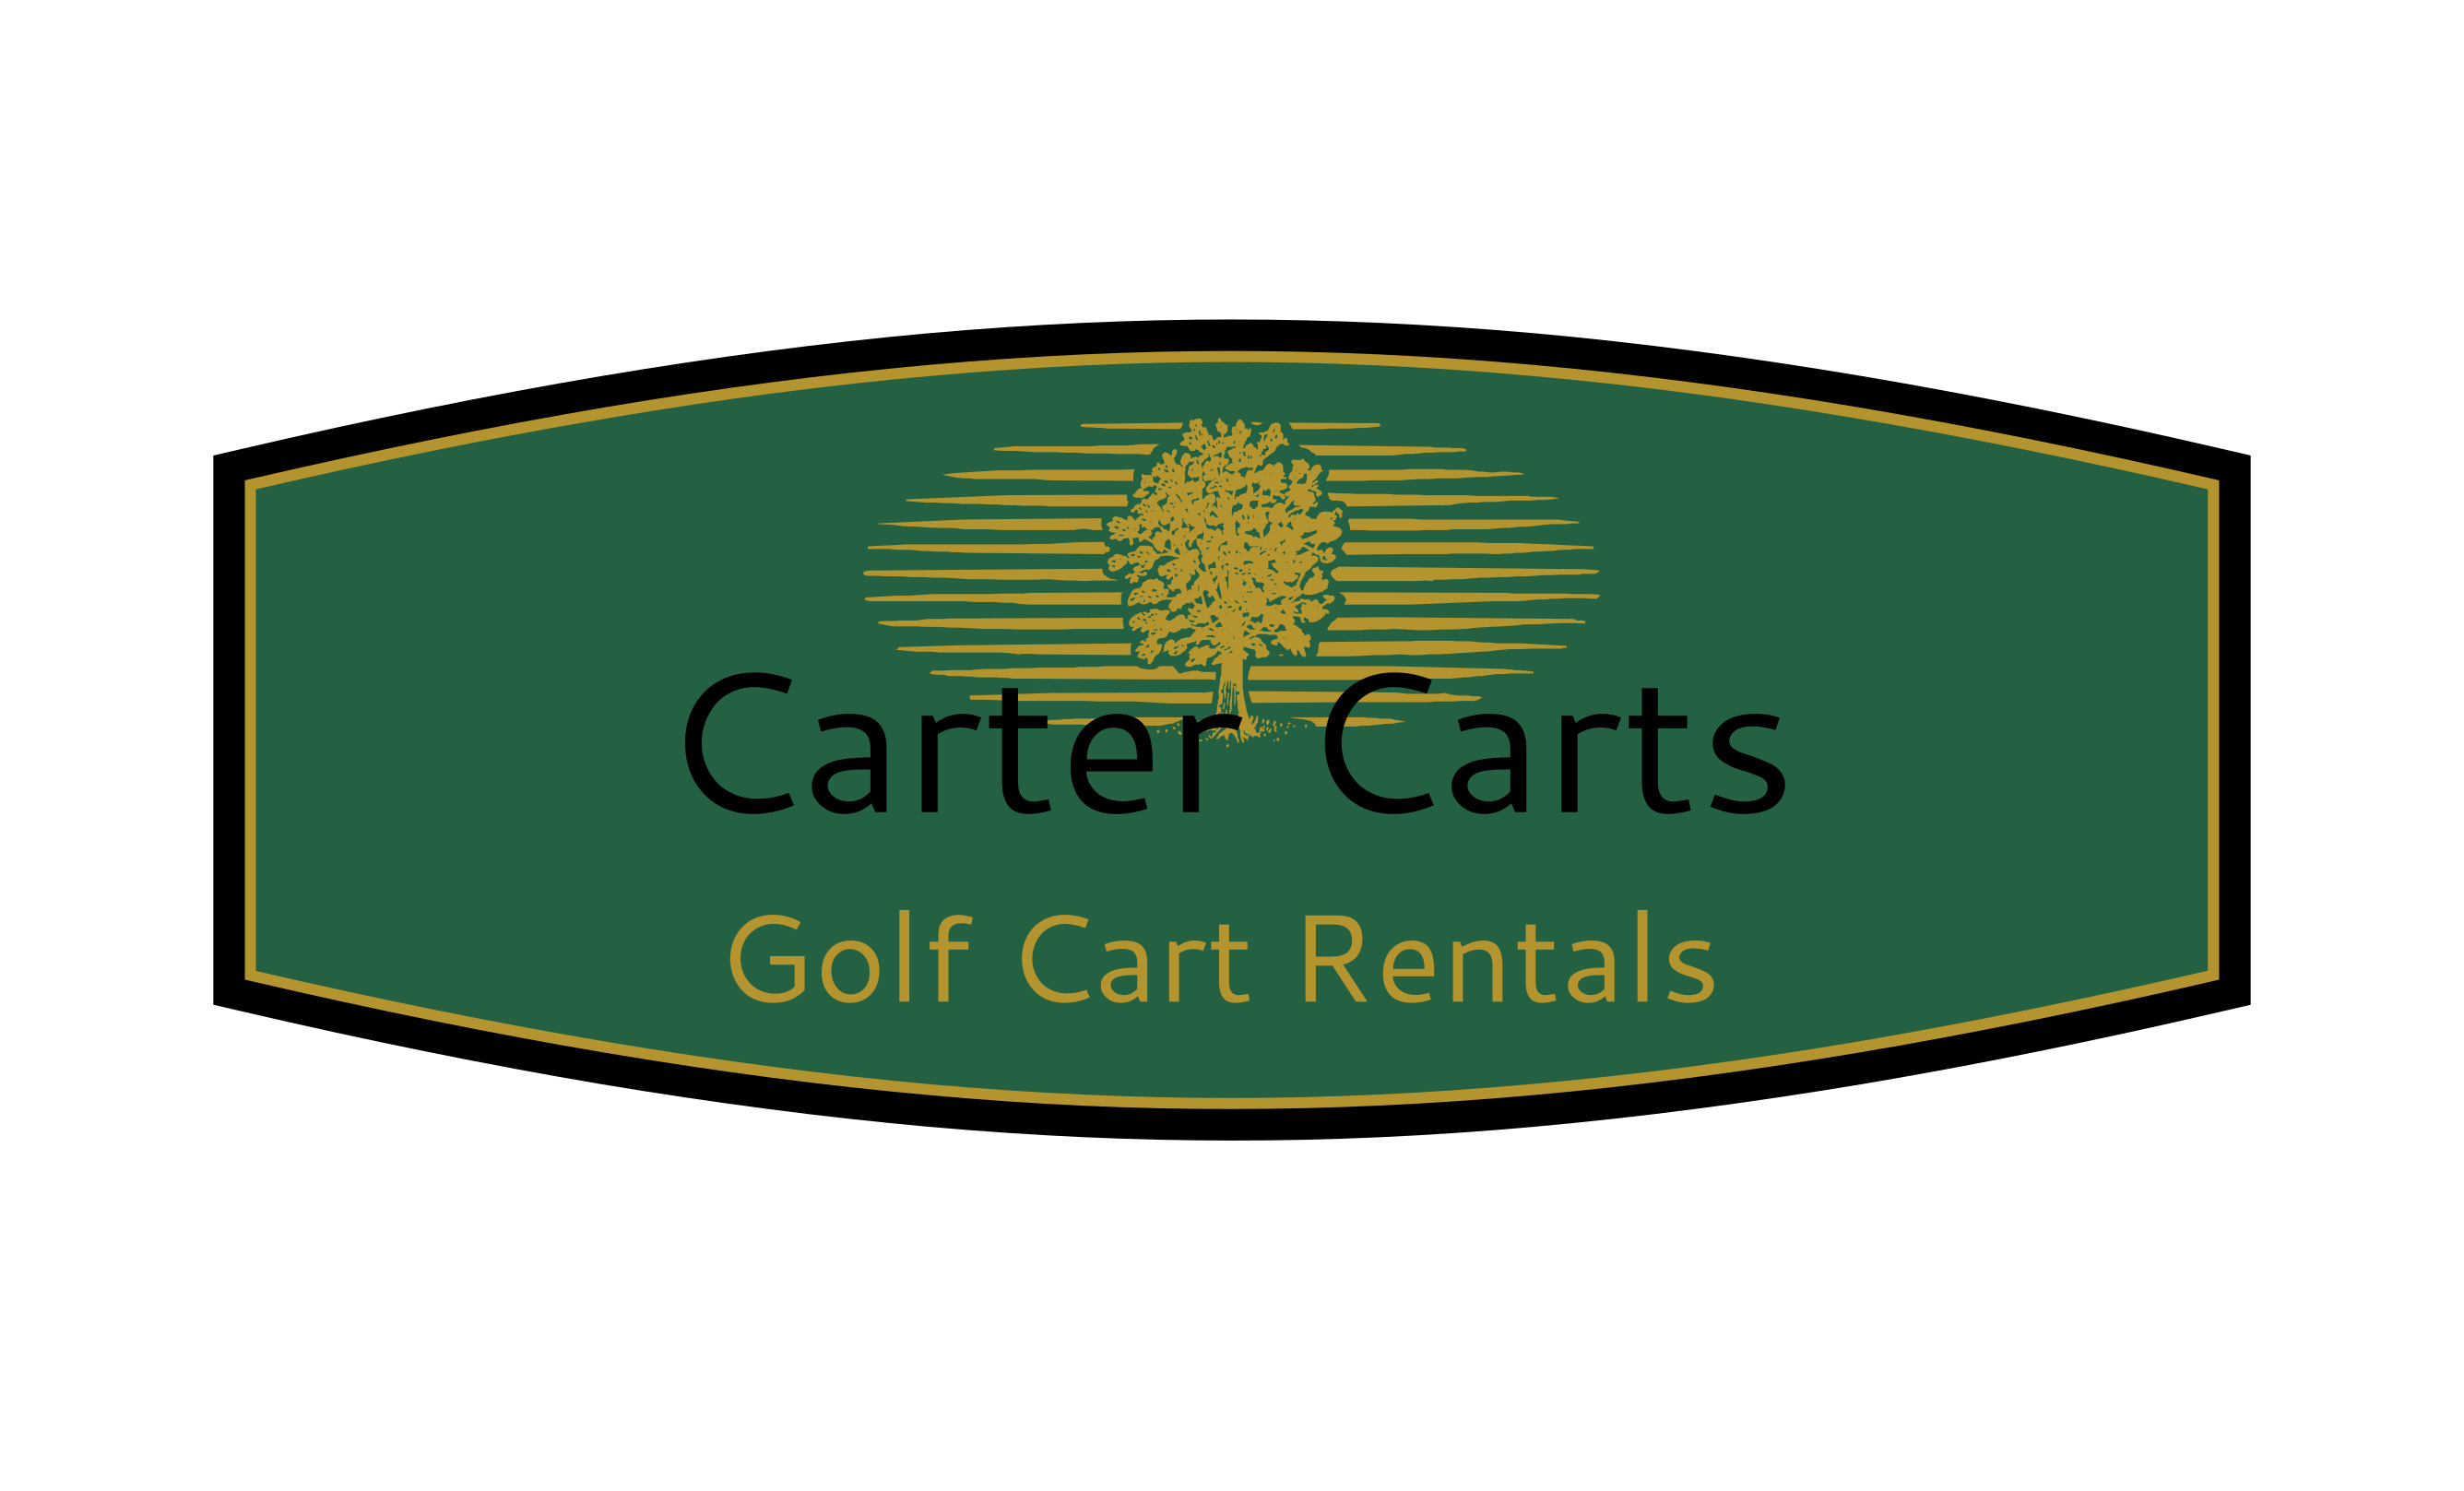 Carter Carts